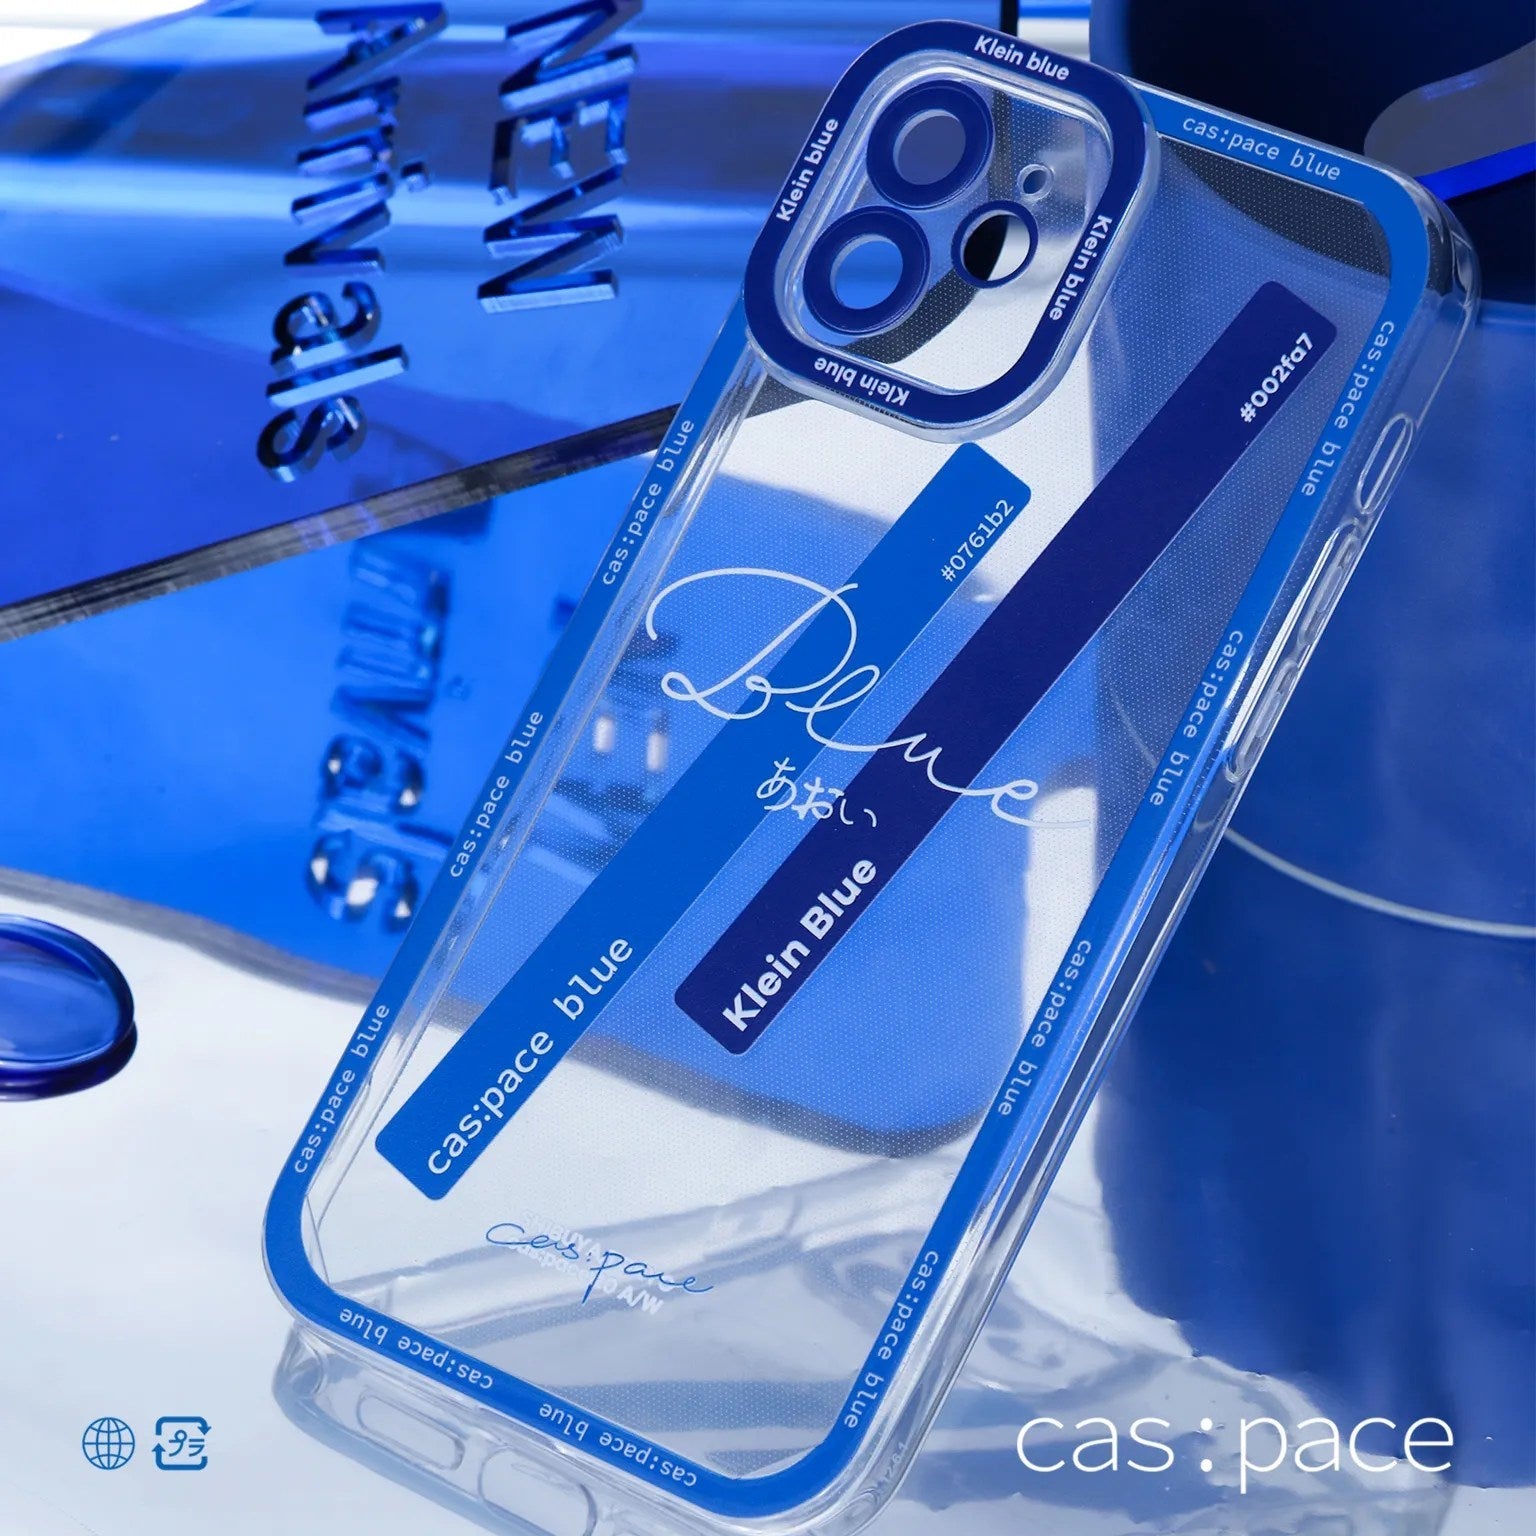 cas:pace 21A/W 「cas:pace blueカラーカード」携帯ケース - cas:pace 殼空間